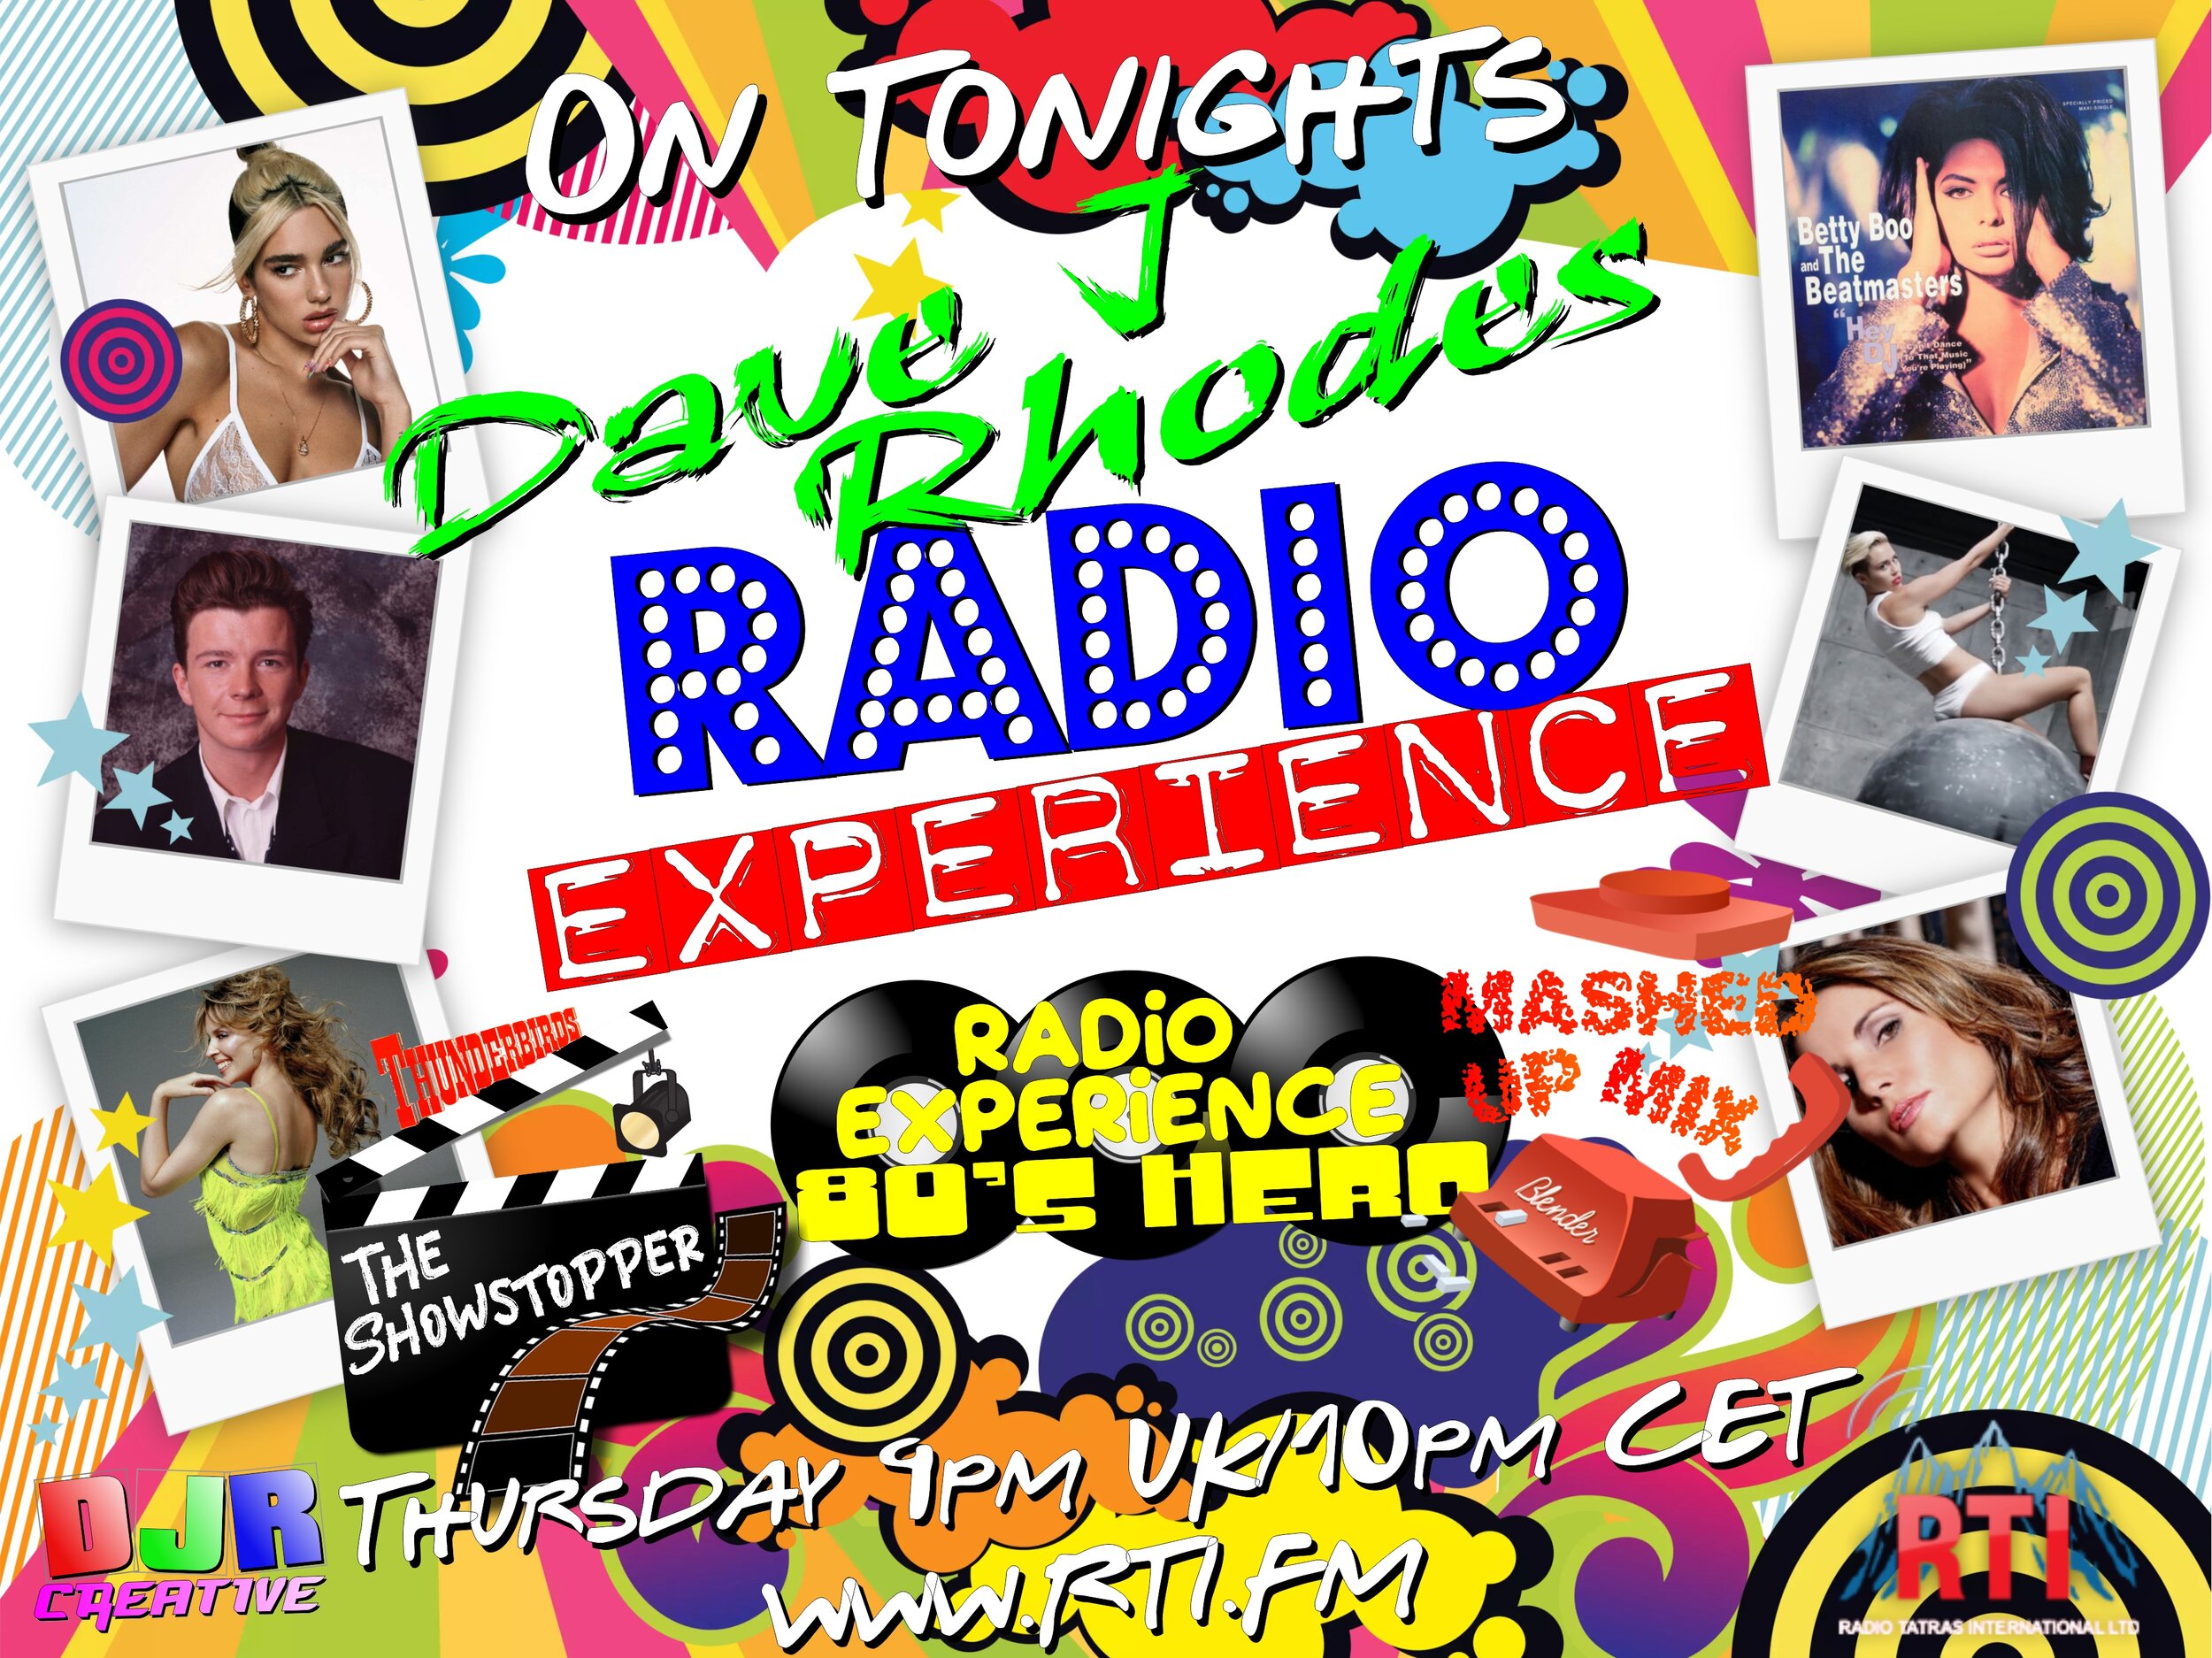 Radio Experiance show 19 Thursday .jpg